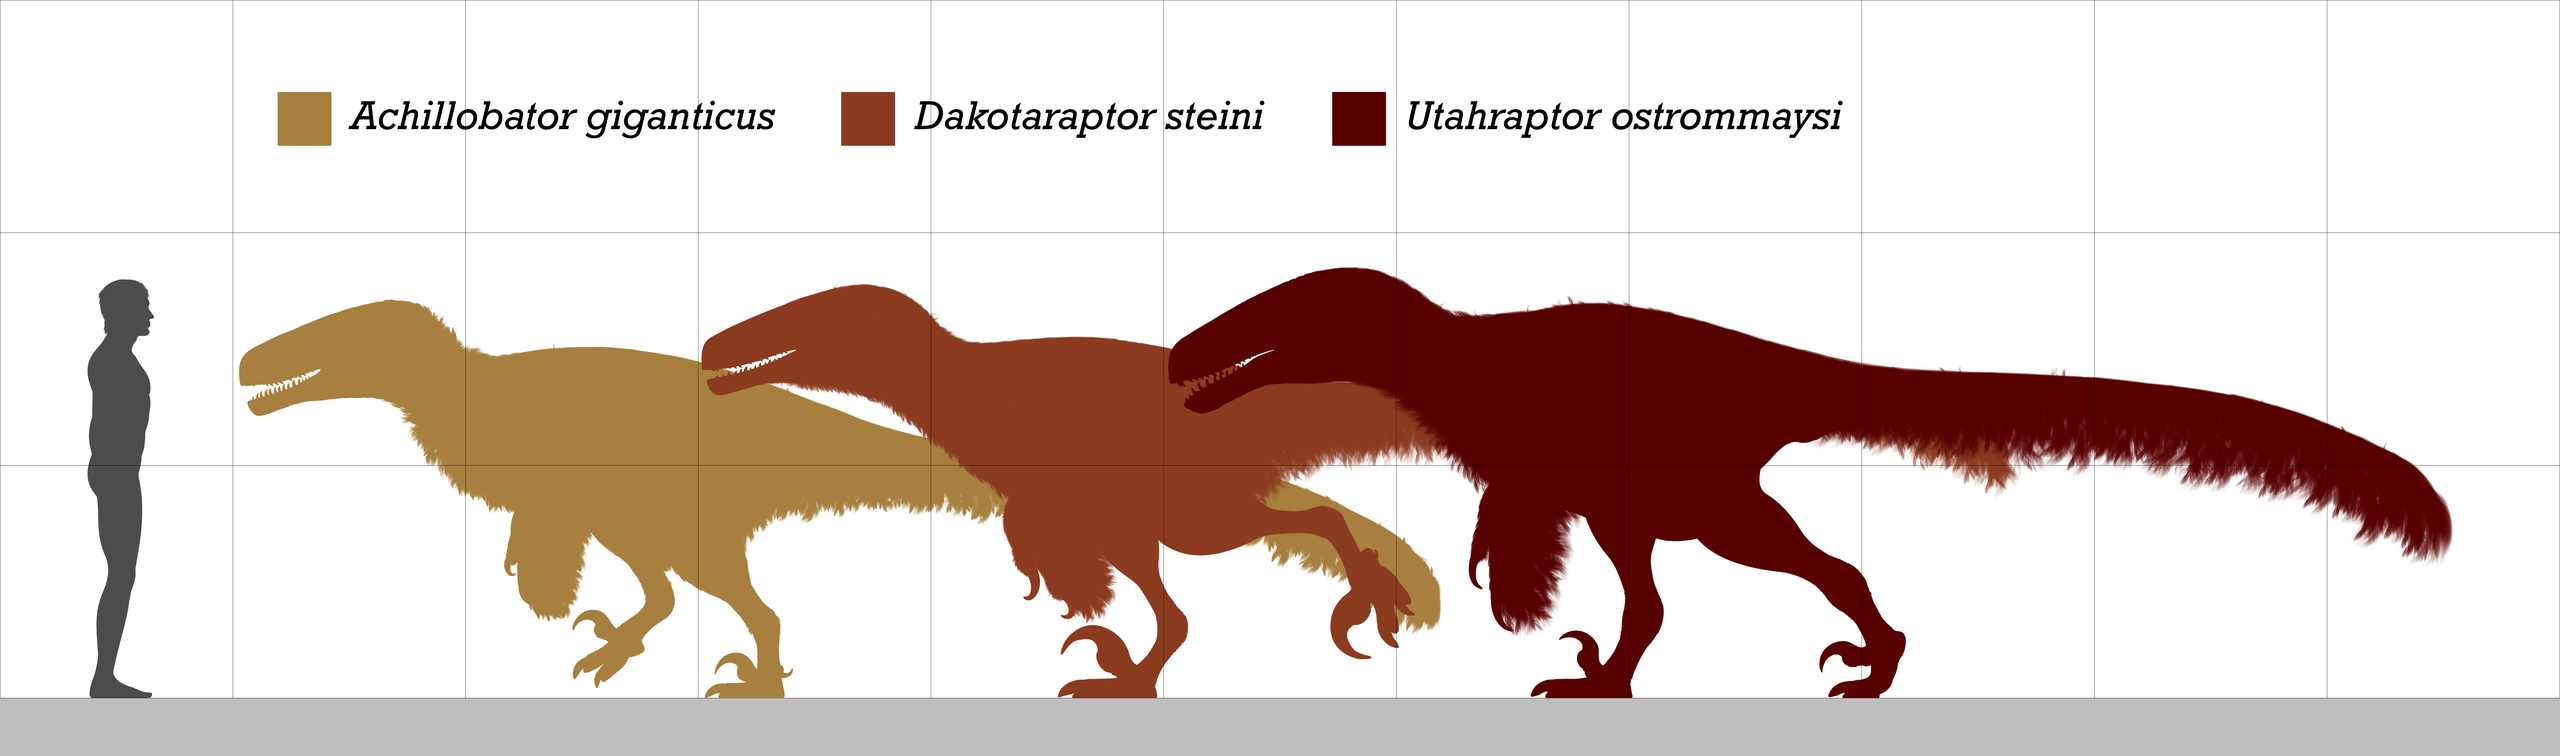 Pokud je dakotaraptor formálně platným taxonem a skutečným zástupcem čeledi Dromaeosauridae, pak nepochybně patří k největším známým zástupcům této čeledi. Jediným dnes známým ještě větším druhem je geologicky mnohem starší Utahraptor ostrommaysi (na